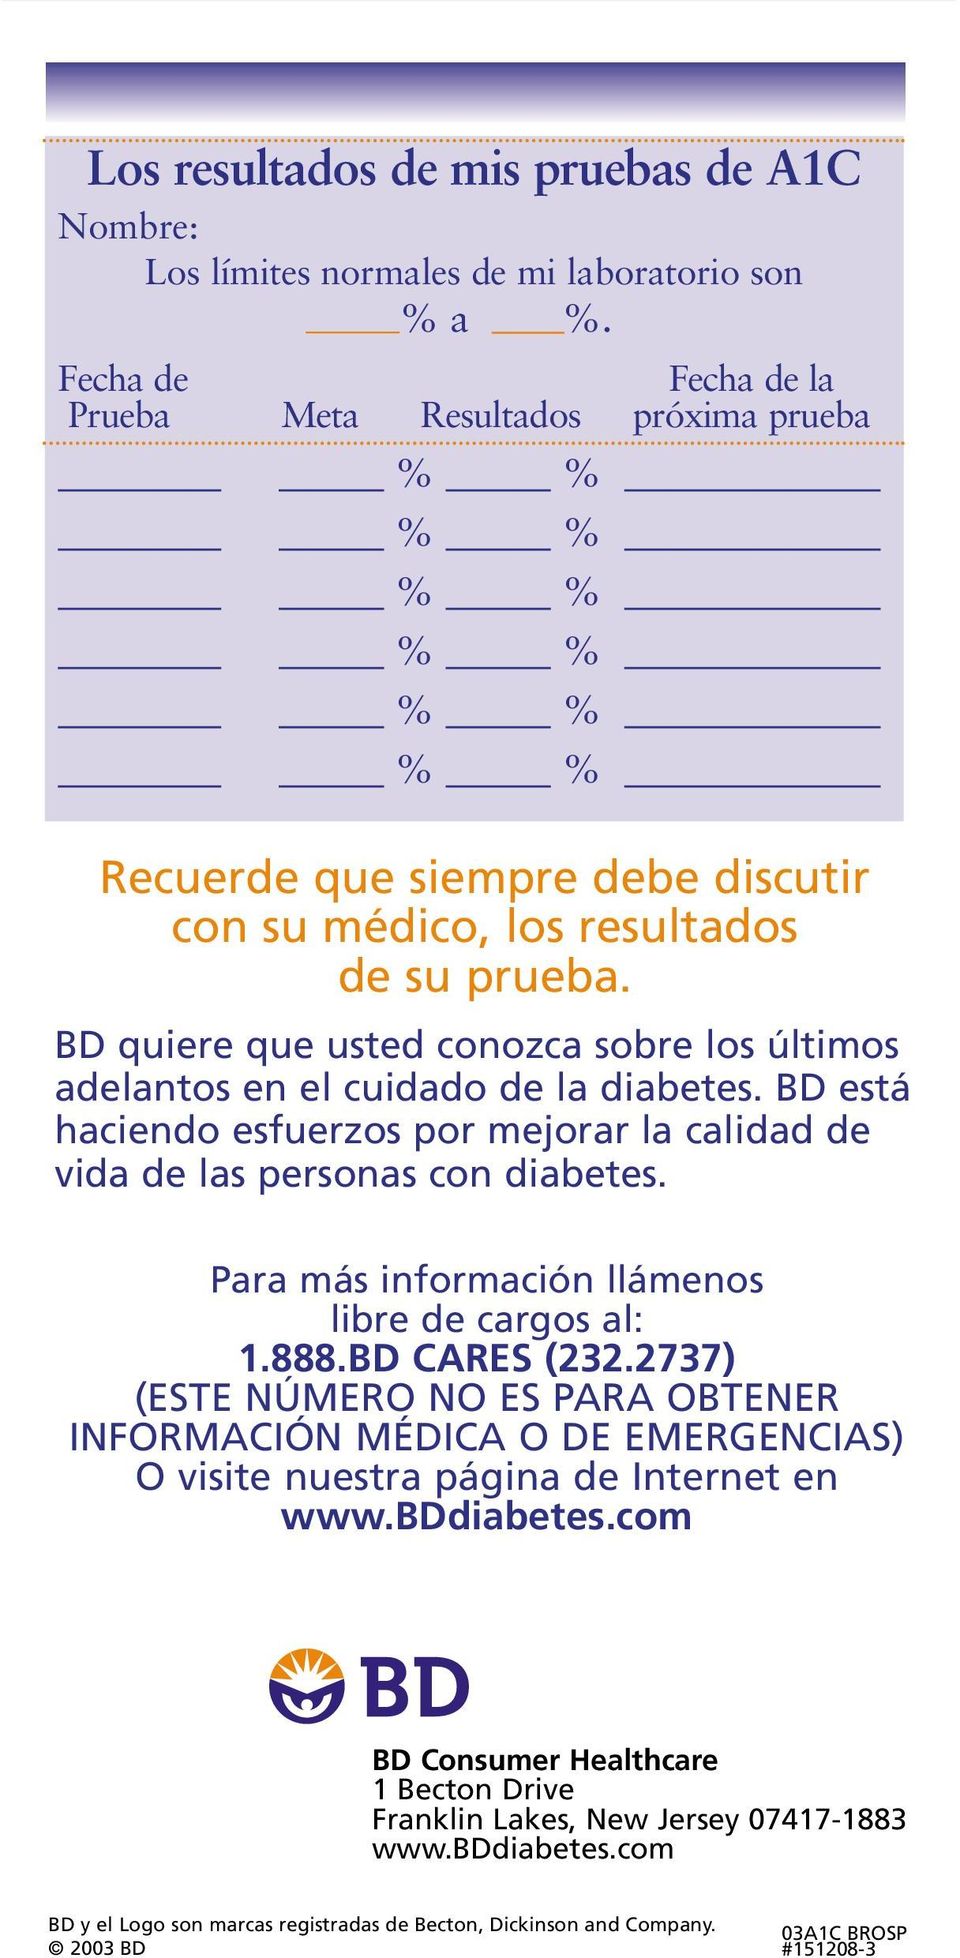 BD quiere que usted conozca sobre los últimos adelantos en el cuidado de la diabetes. BD está haciendo esfuerzos por mejorar la calidad de vida de las personas con diabetes.